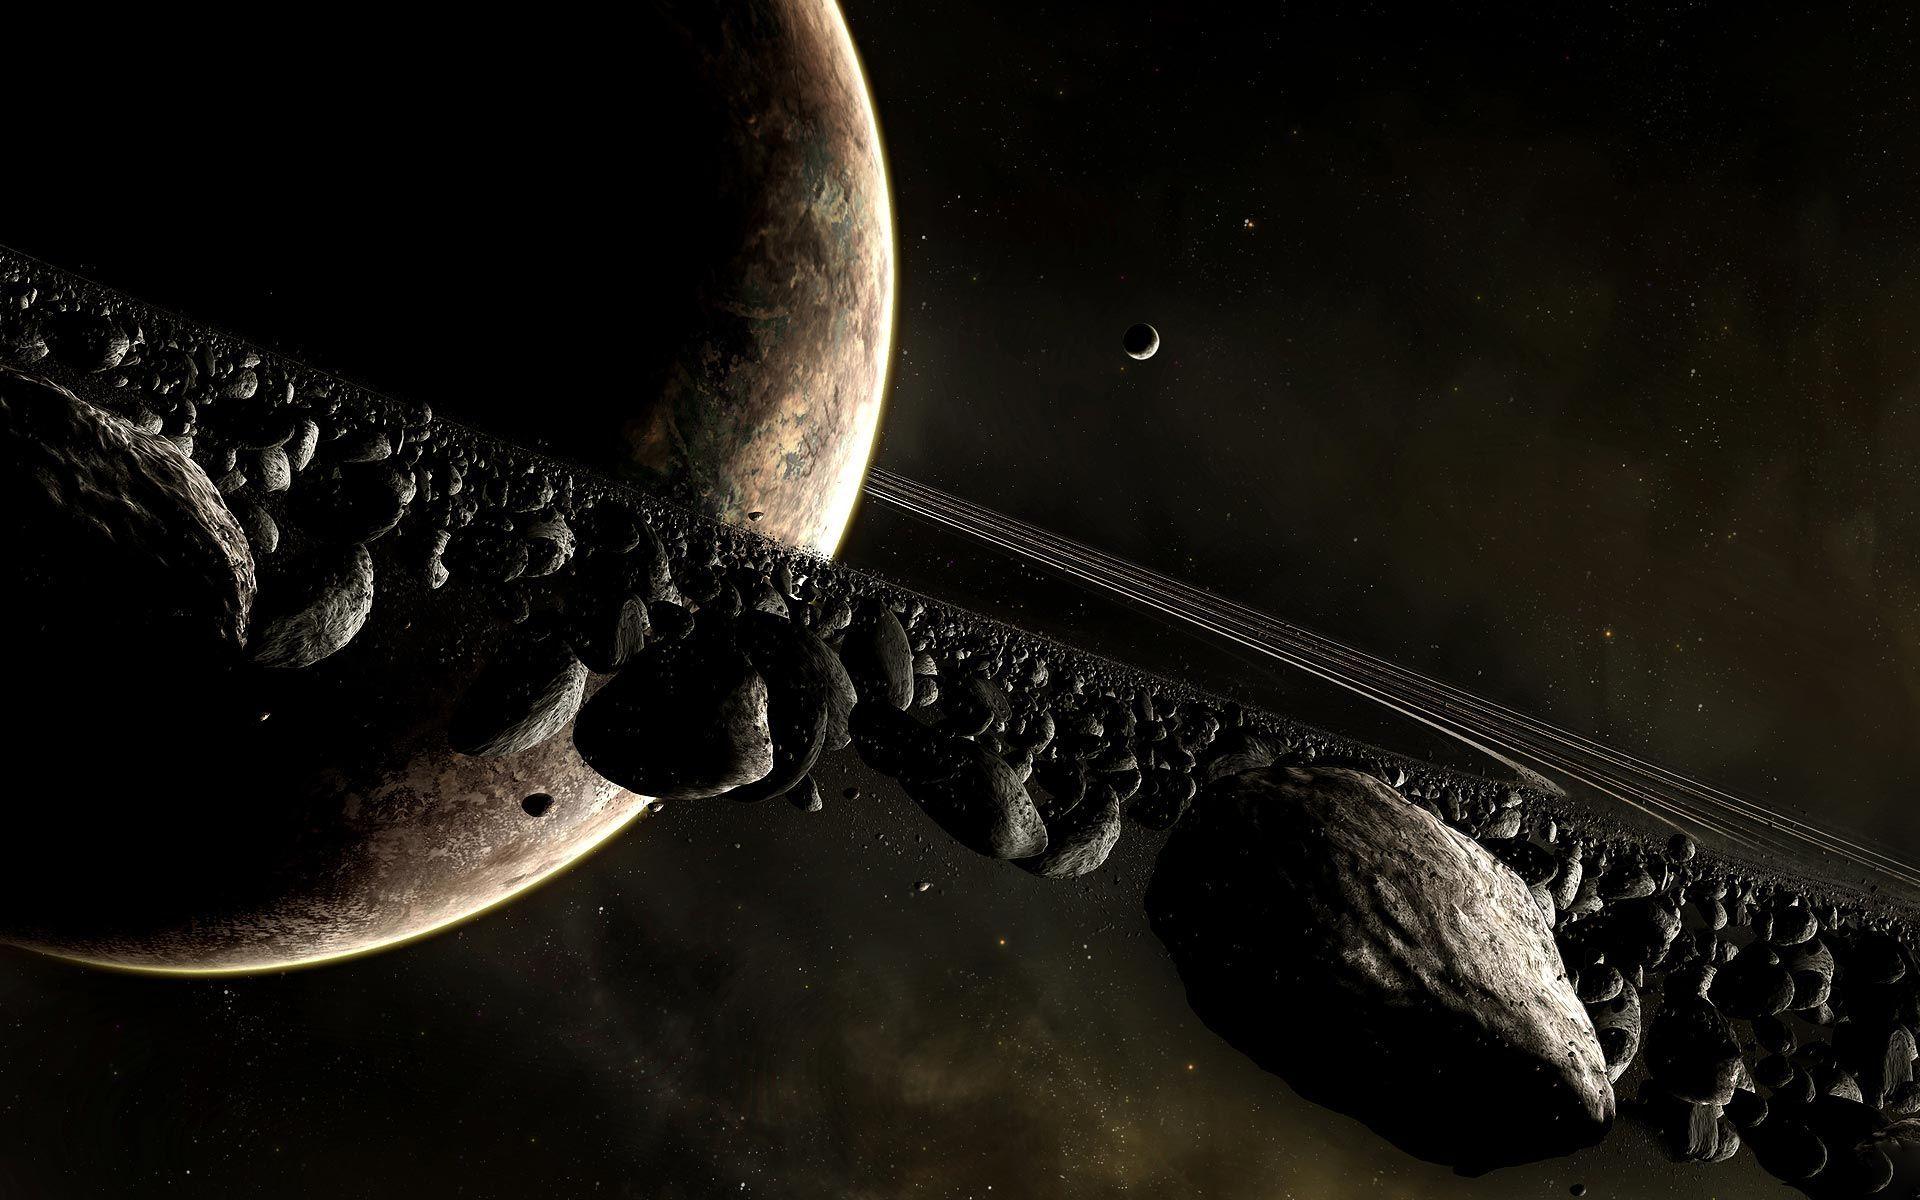 Saturno perderá sus anillos en el futuro, según NASA (Video)